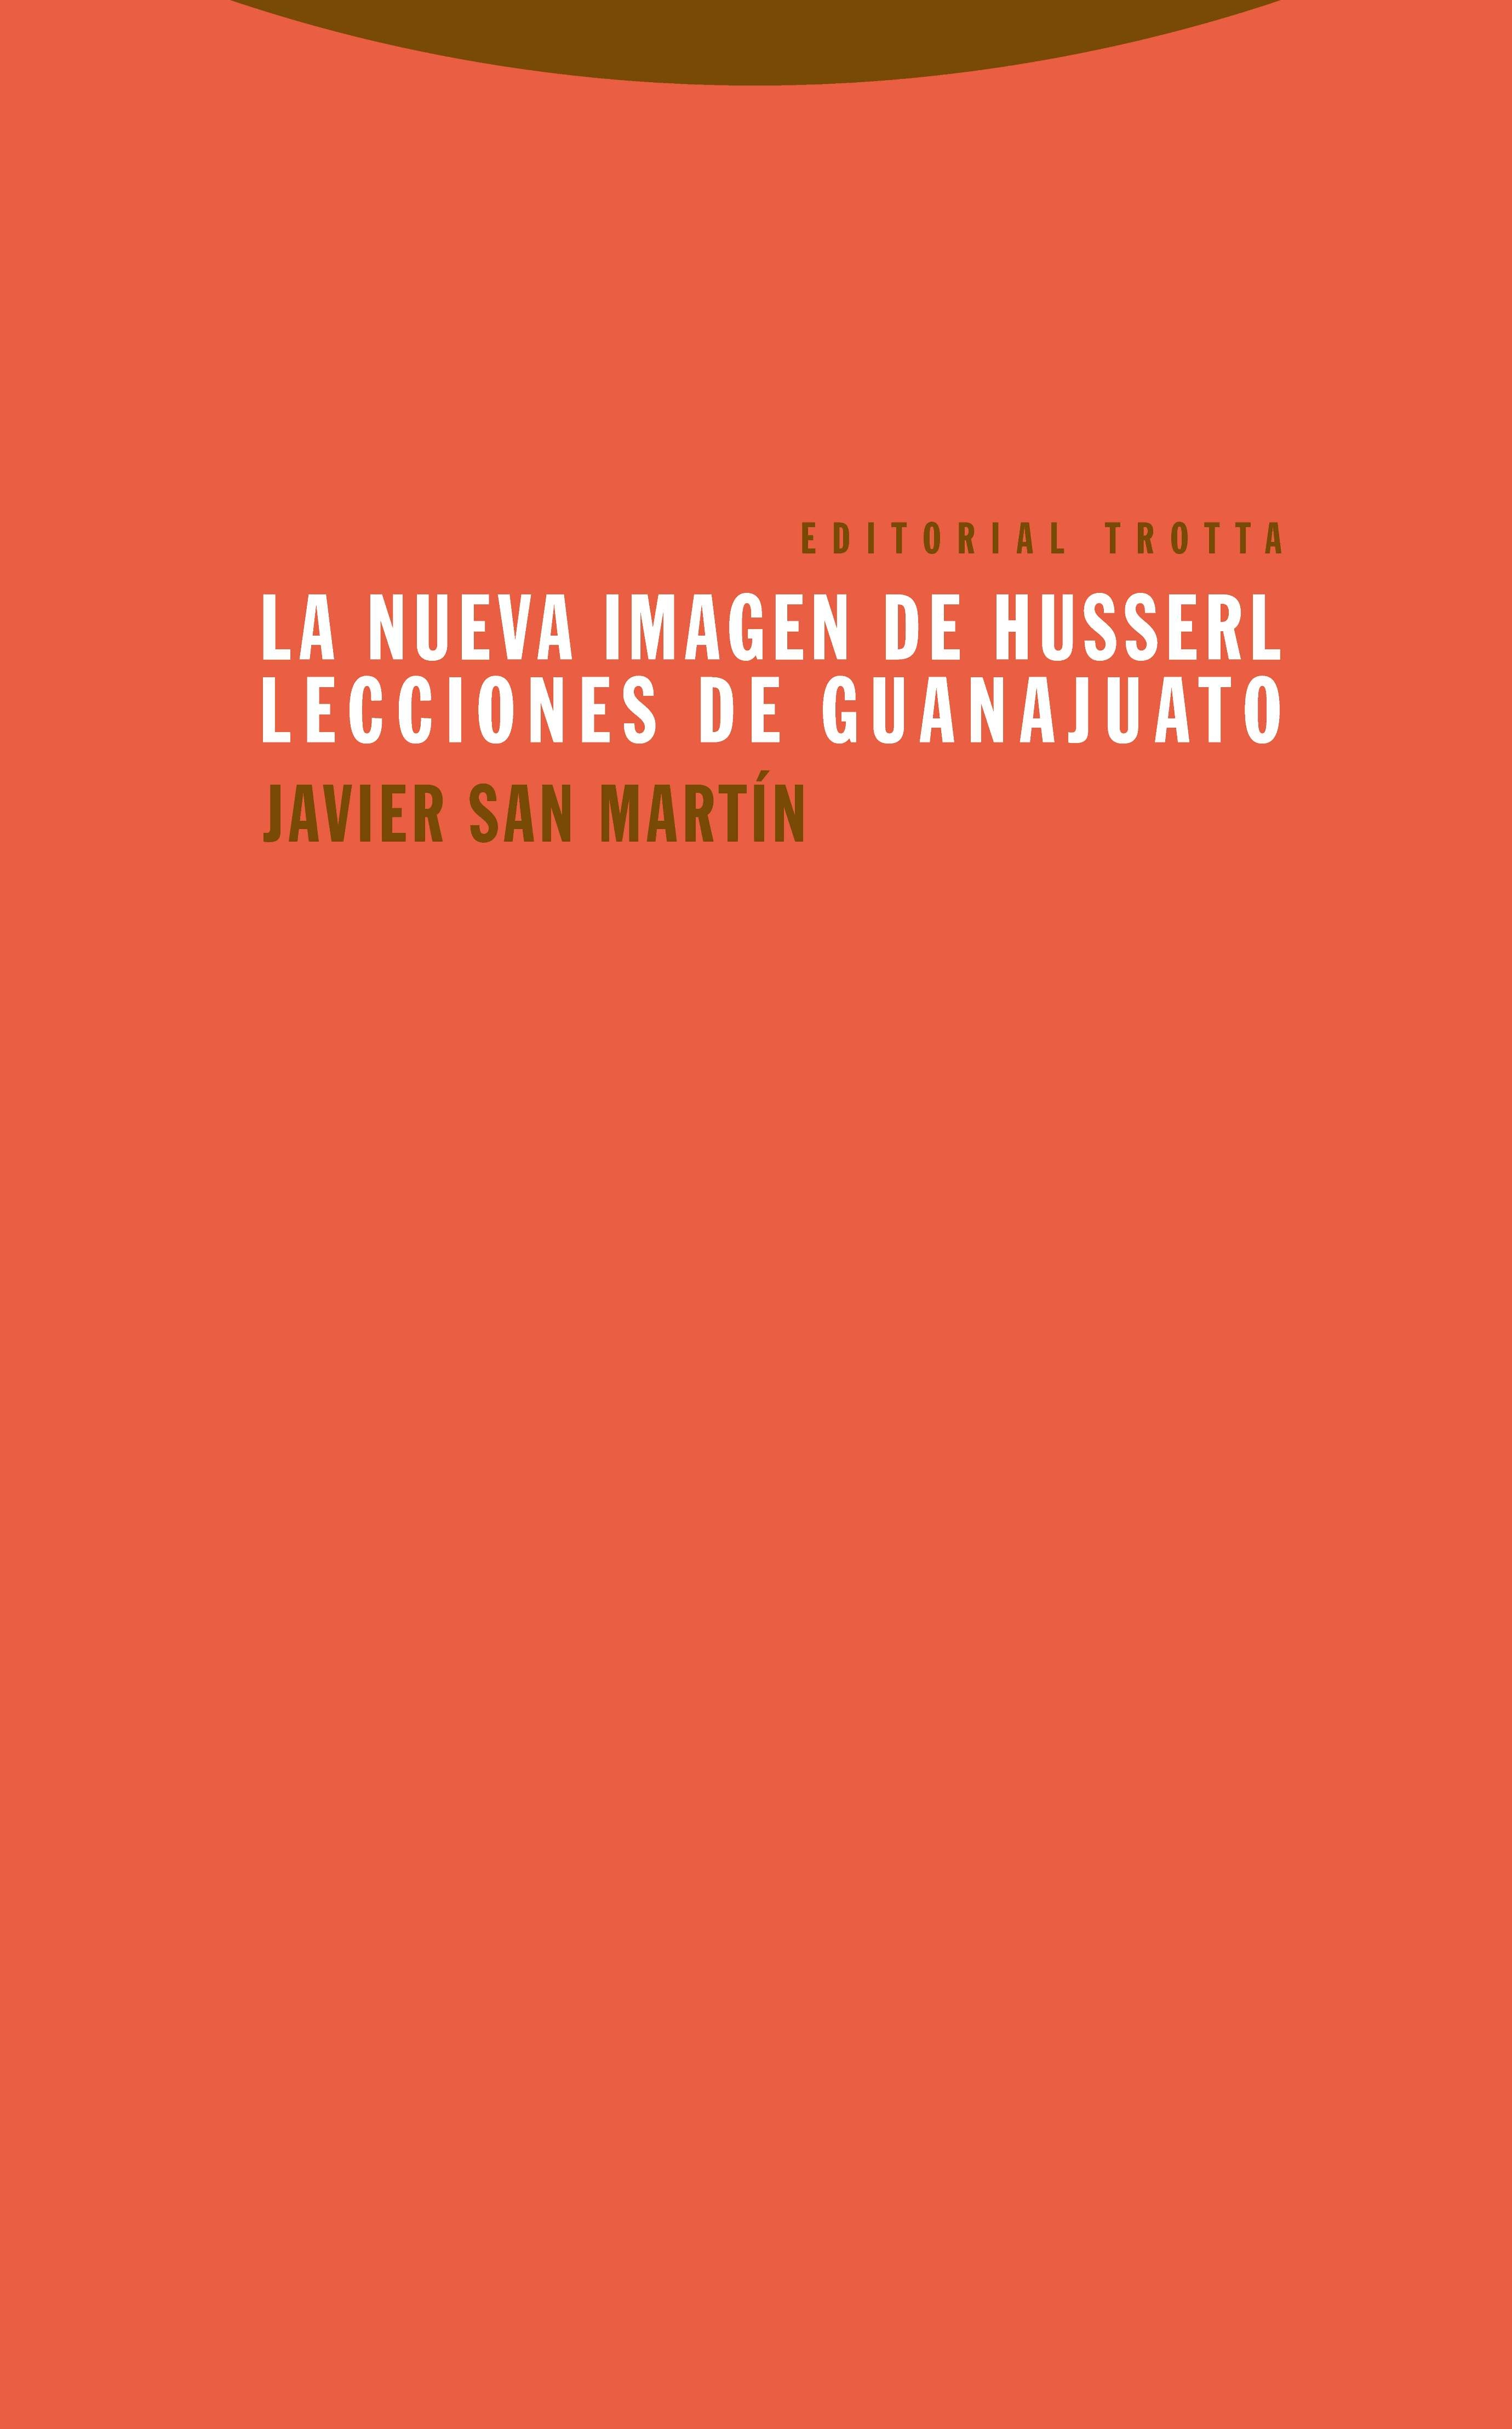 La fenomenología en el nuevo Husserl Reseña al libro de Javier San Martín, La nueva imagen de Husserl. Lecciones de Guanajuato, Trotta, Madrid, 2015, 204 pp.